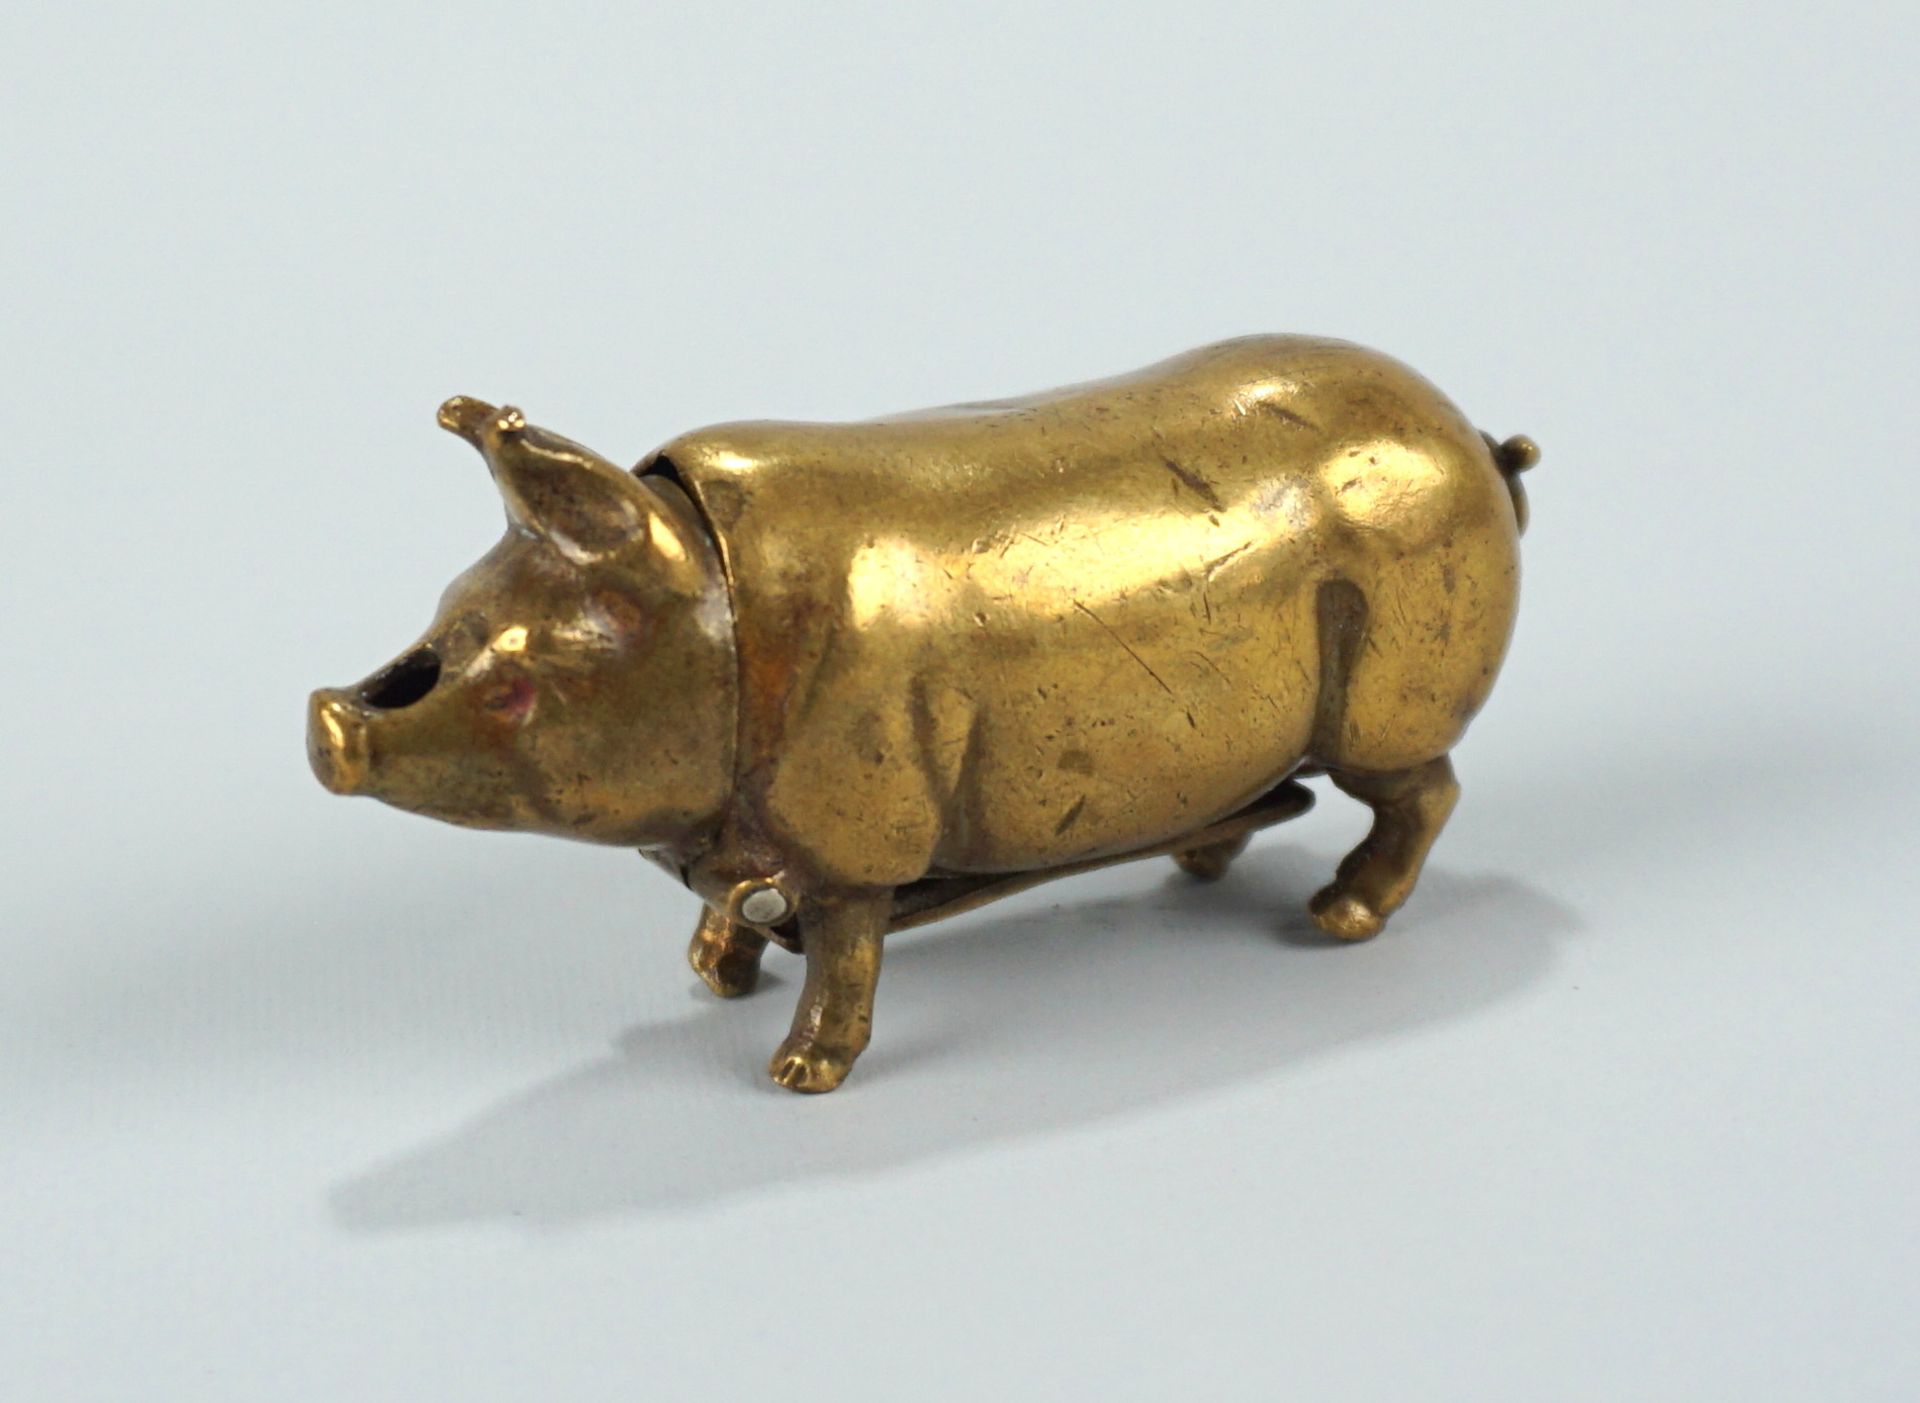 Streichholzbehälter "Schwein", Messing, um 1900